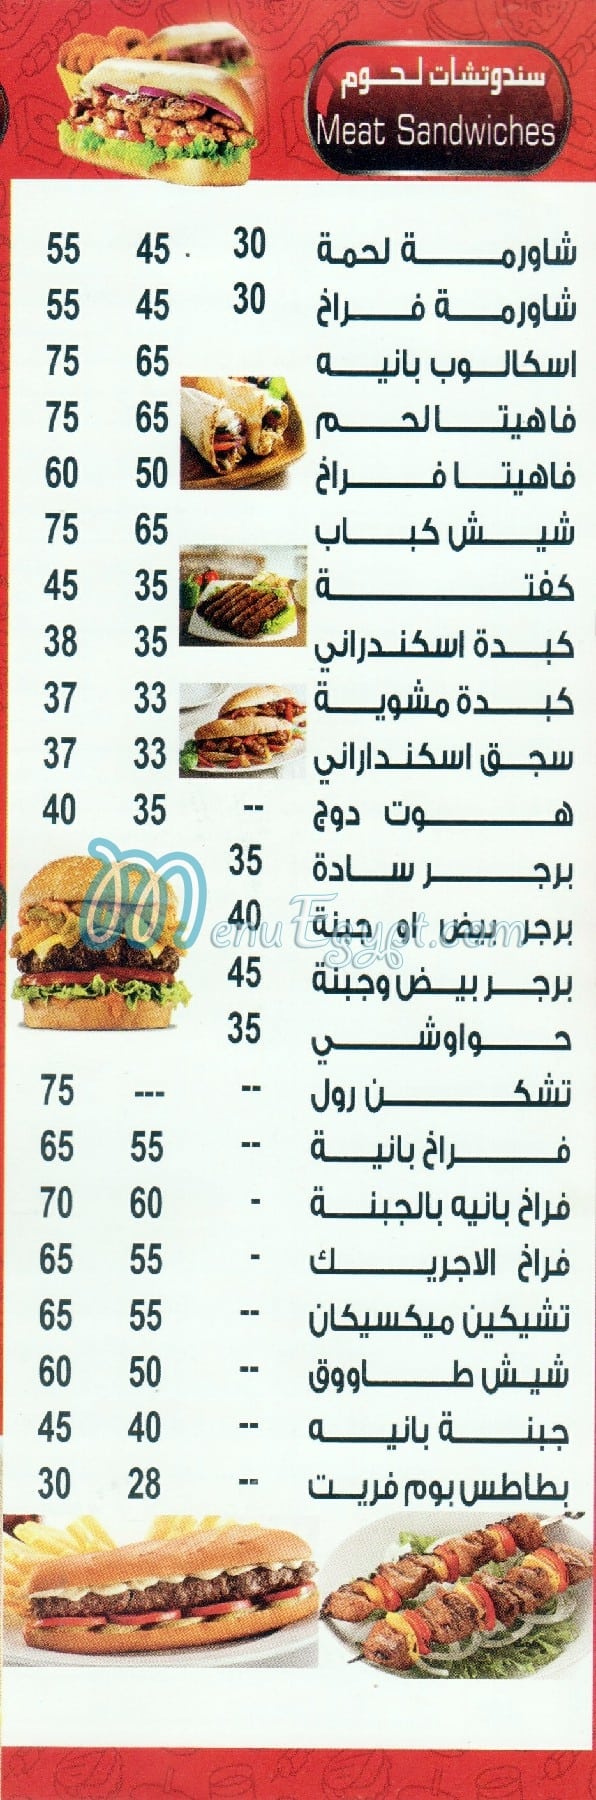 El Shabrawy El Mohandessin online menu